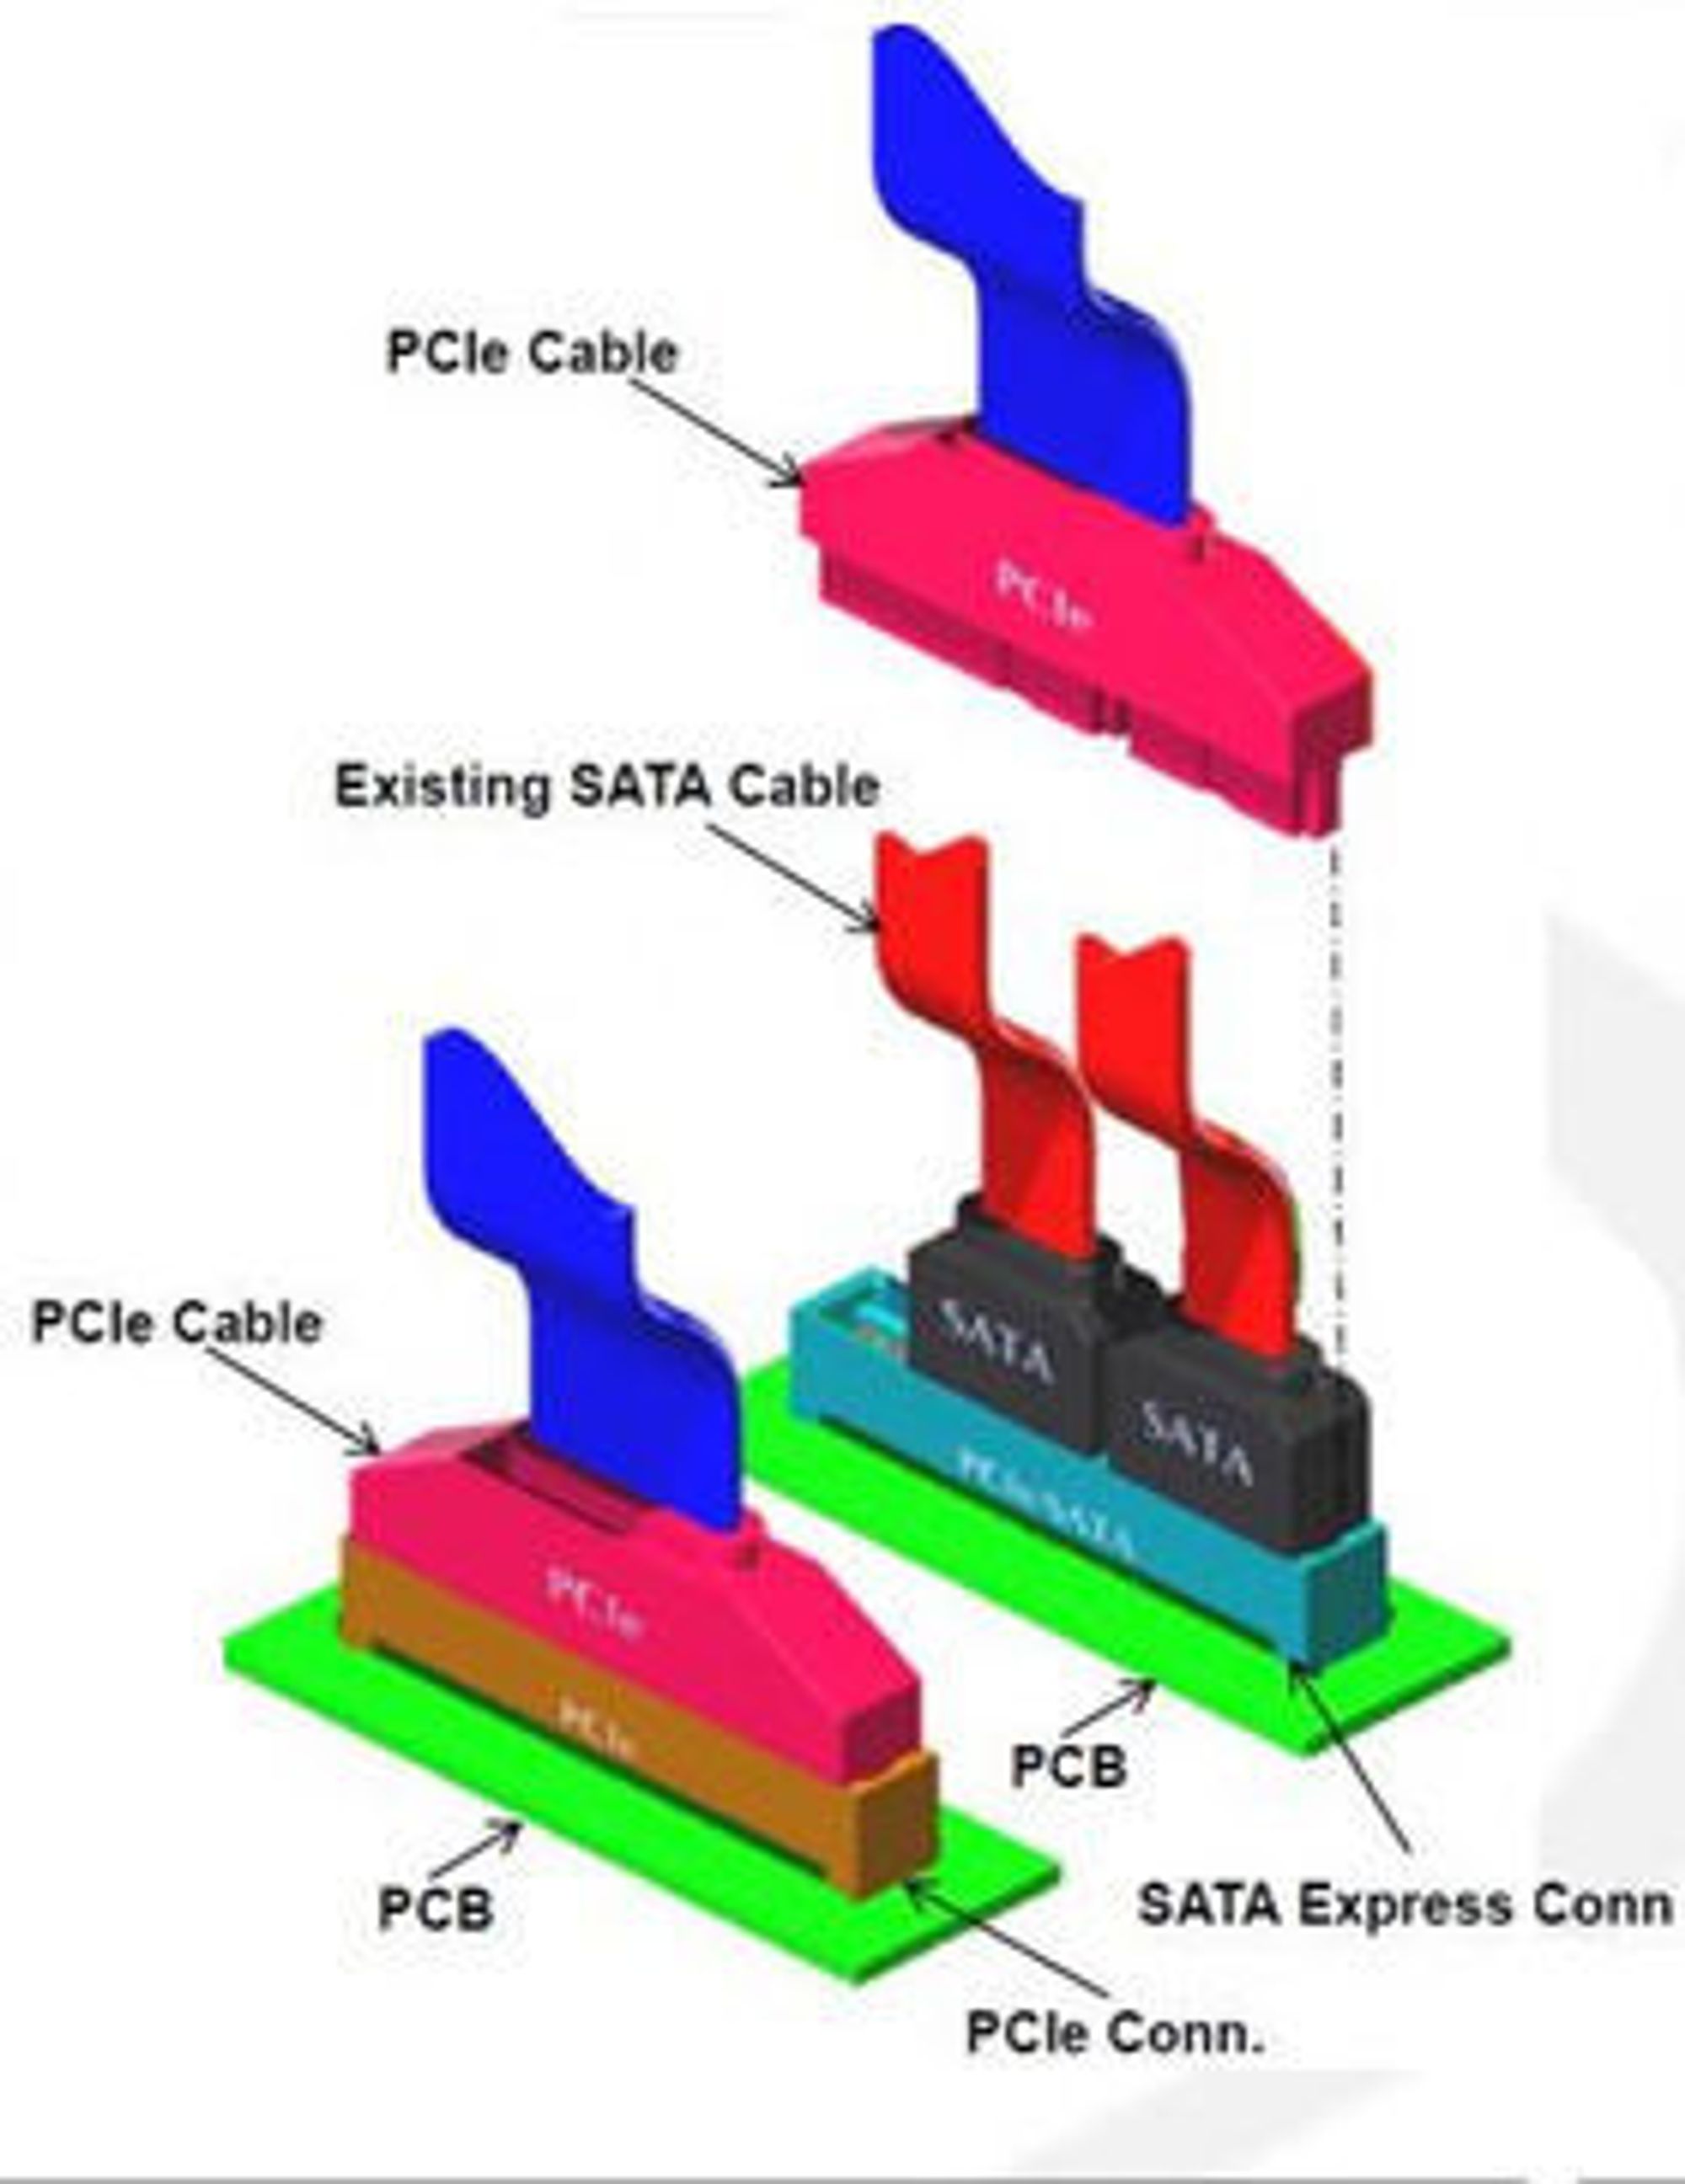 Man skal kunne koble én PCIe-kabel eller to SATA-kabler til hver SATA Express-kontakt på hovedkortet.